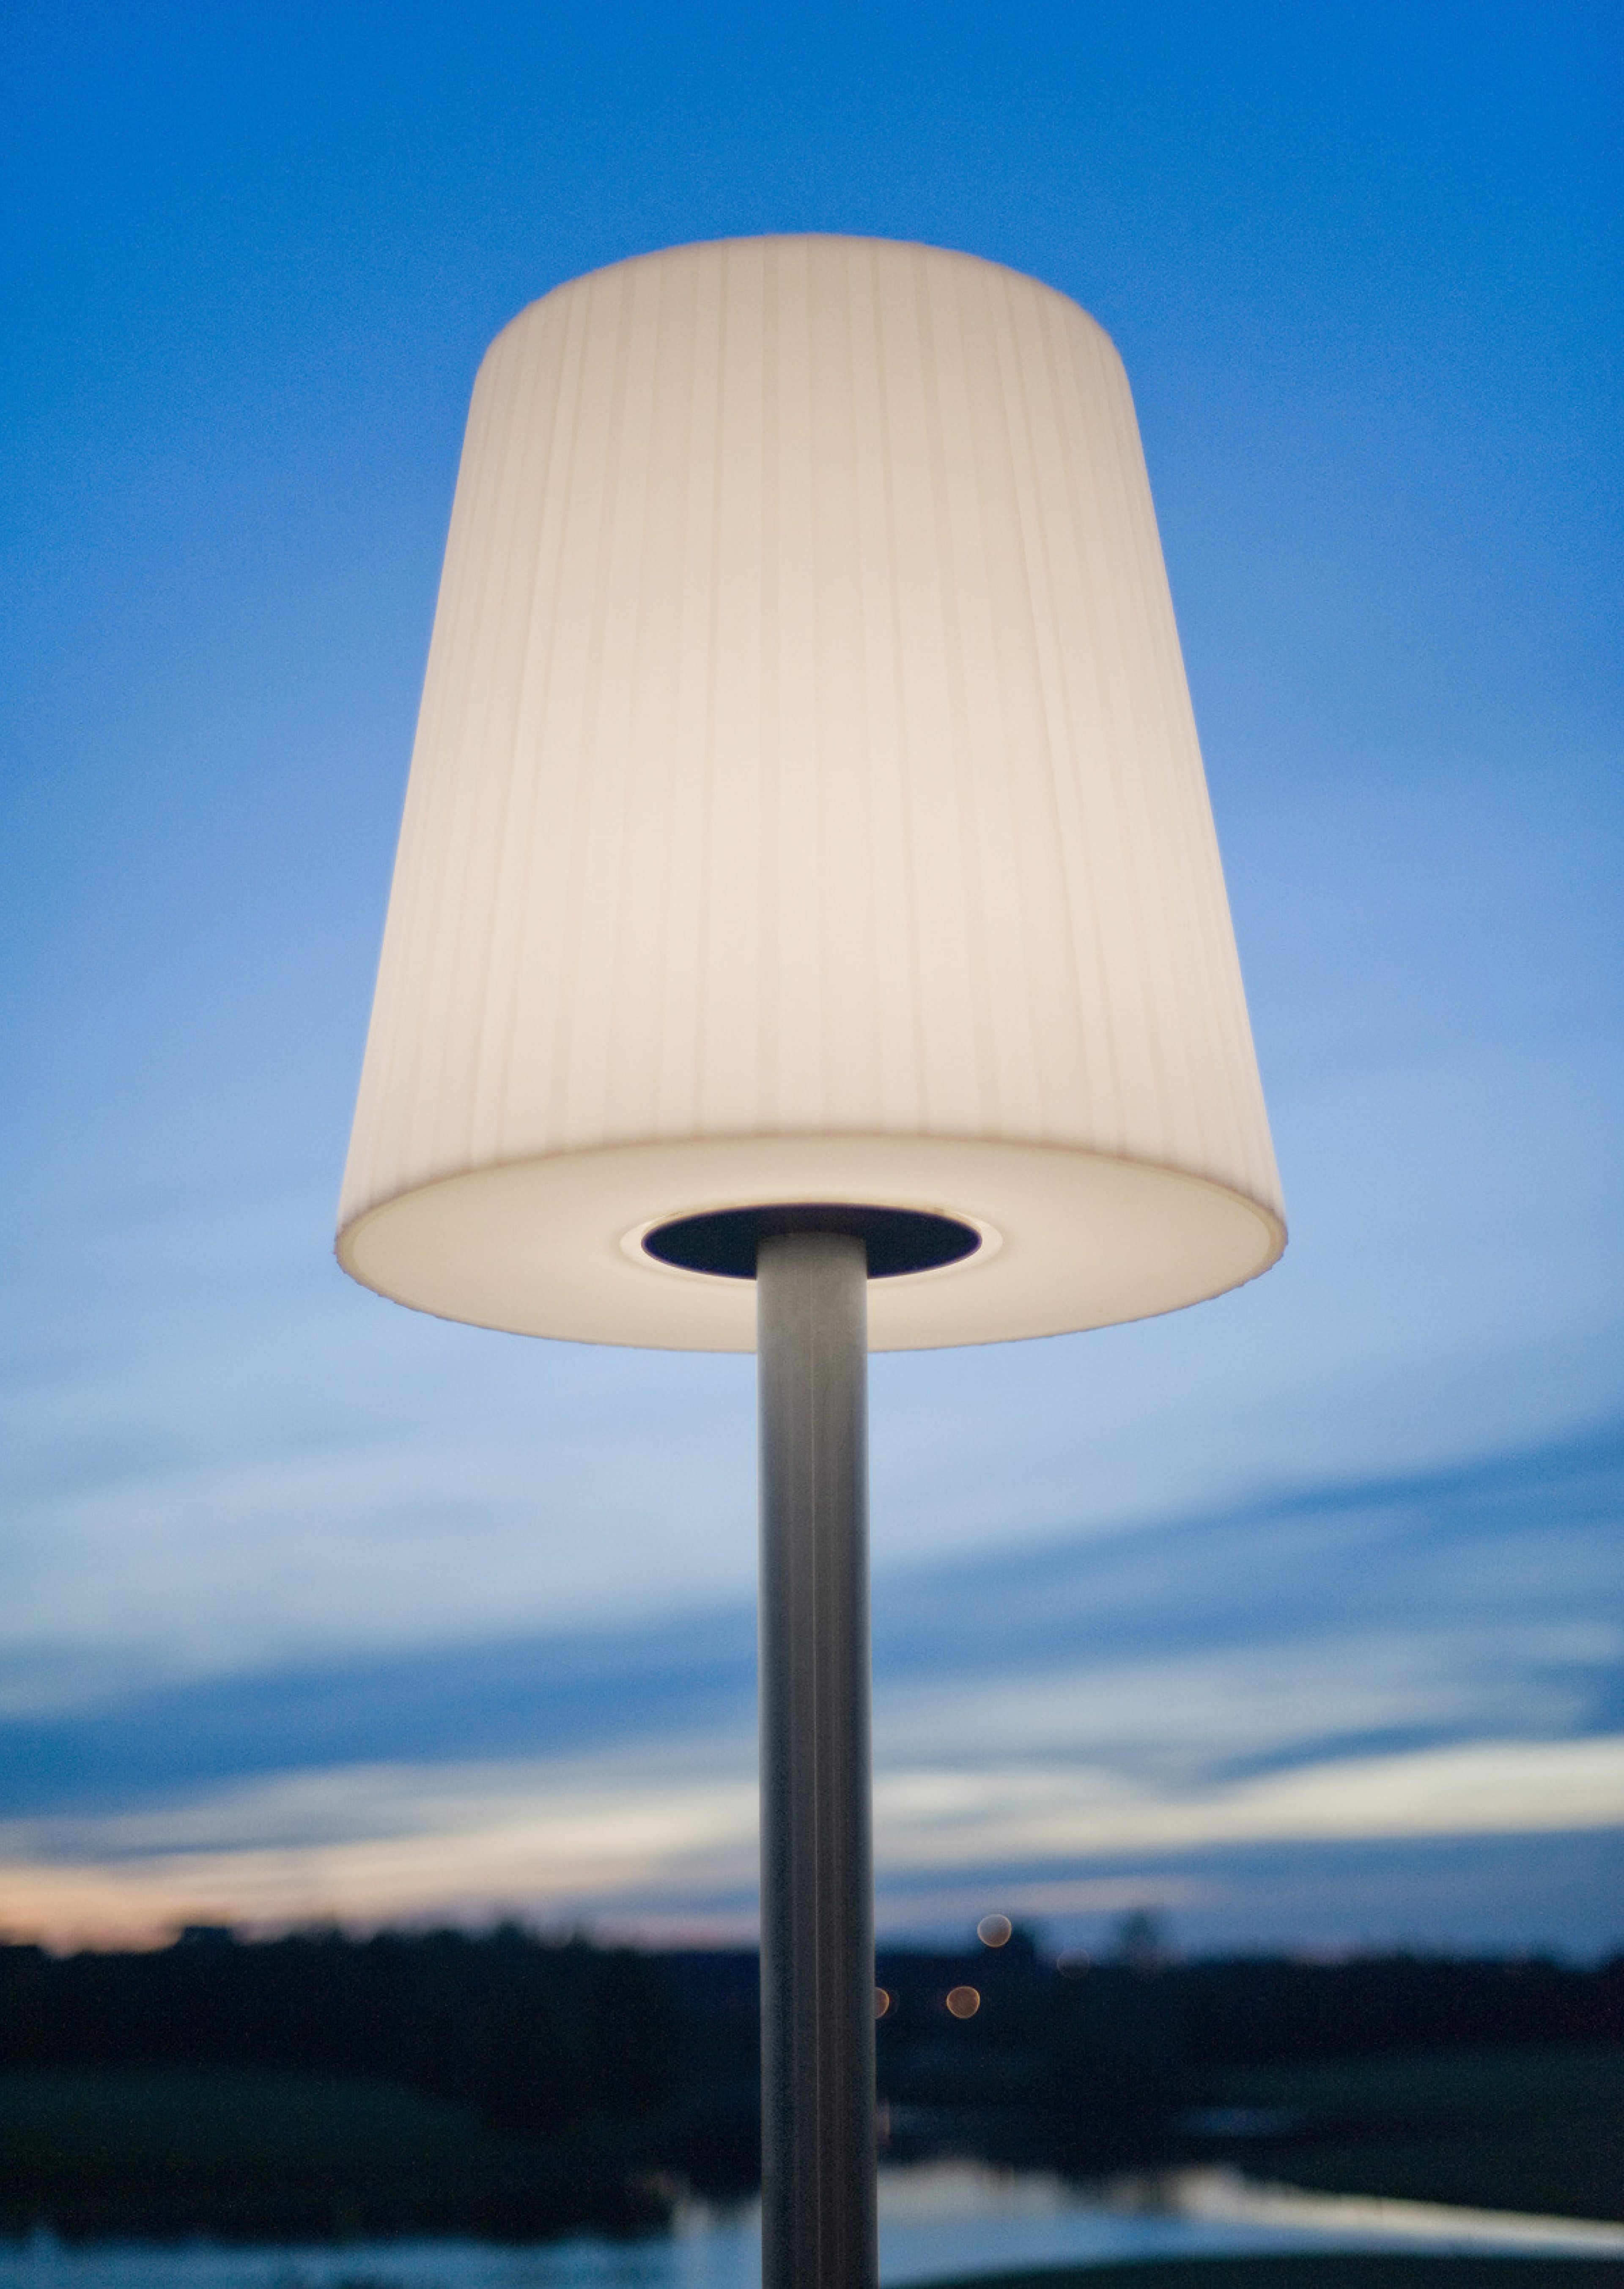 Lichte©
Standing lamp